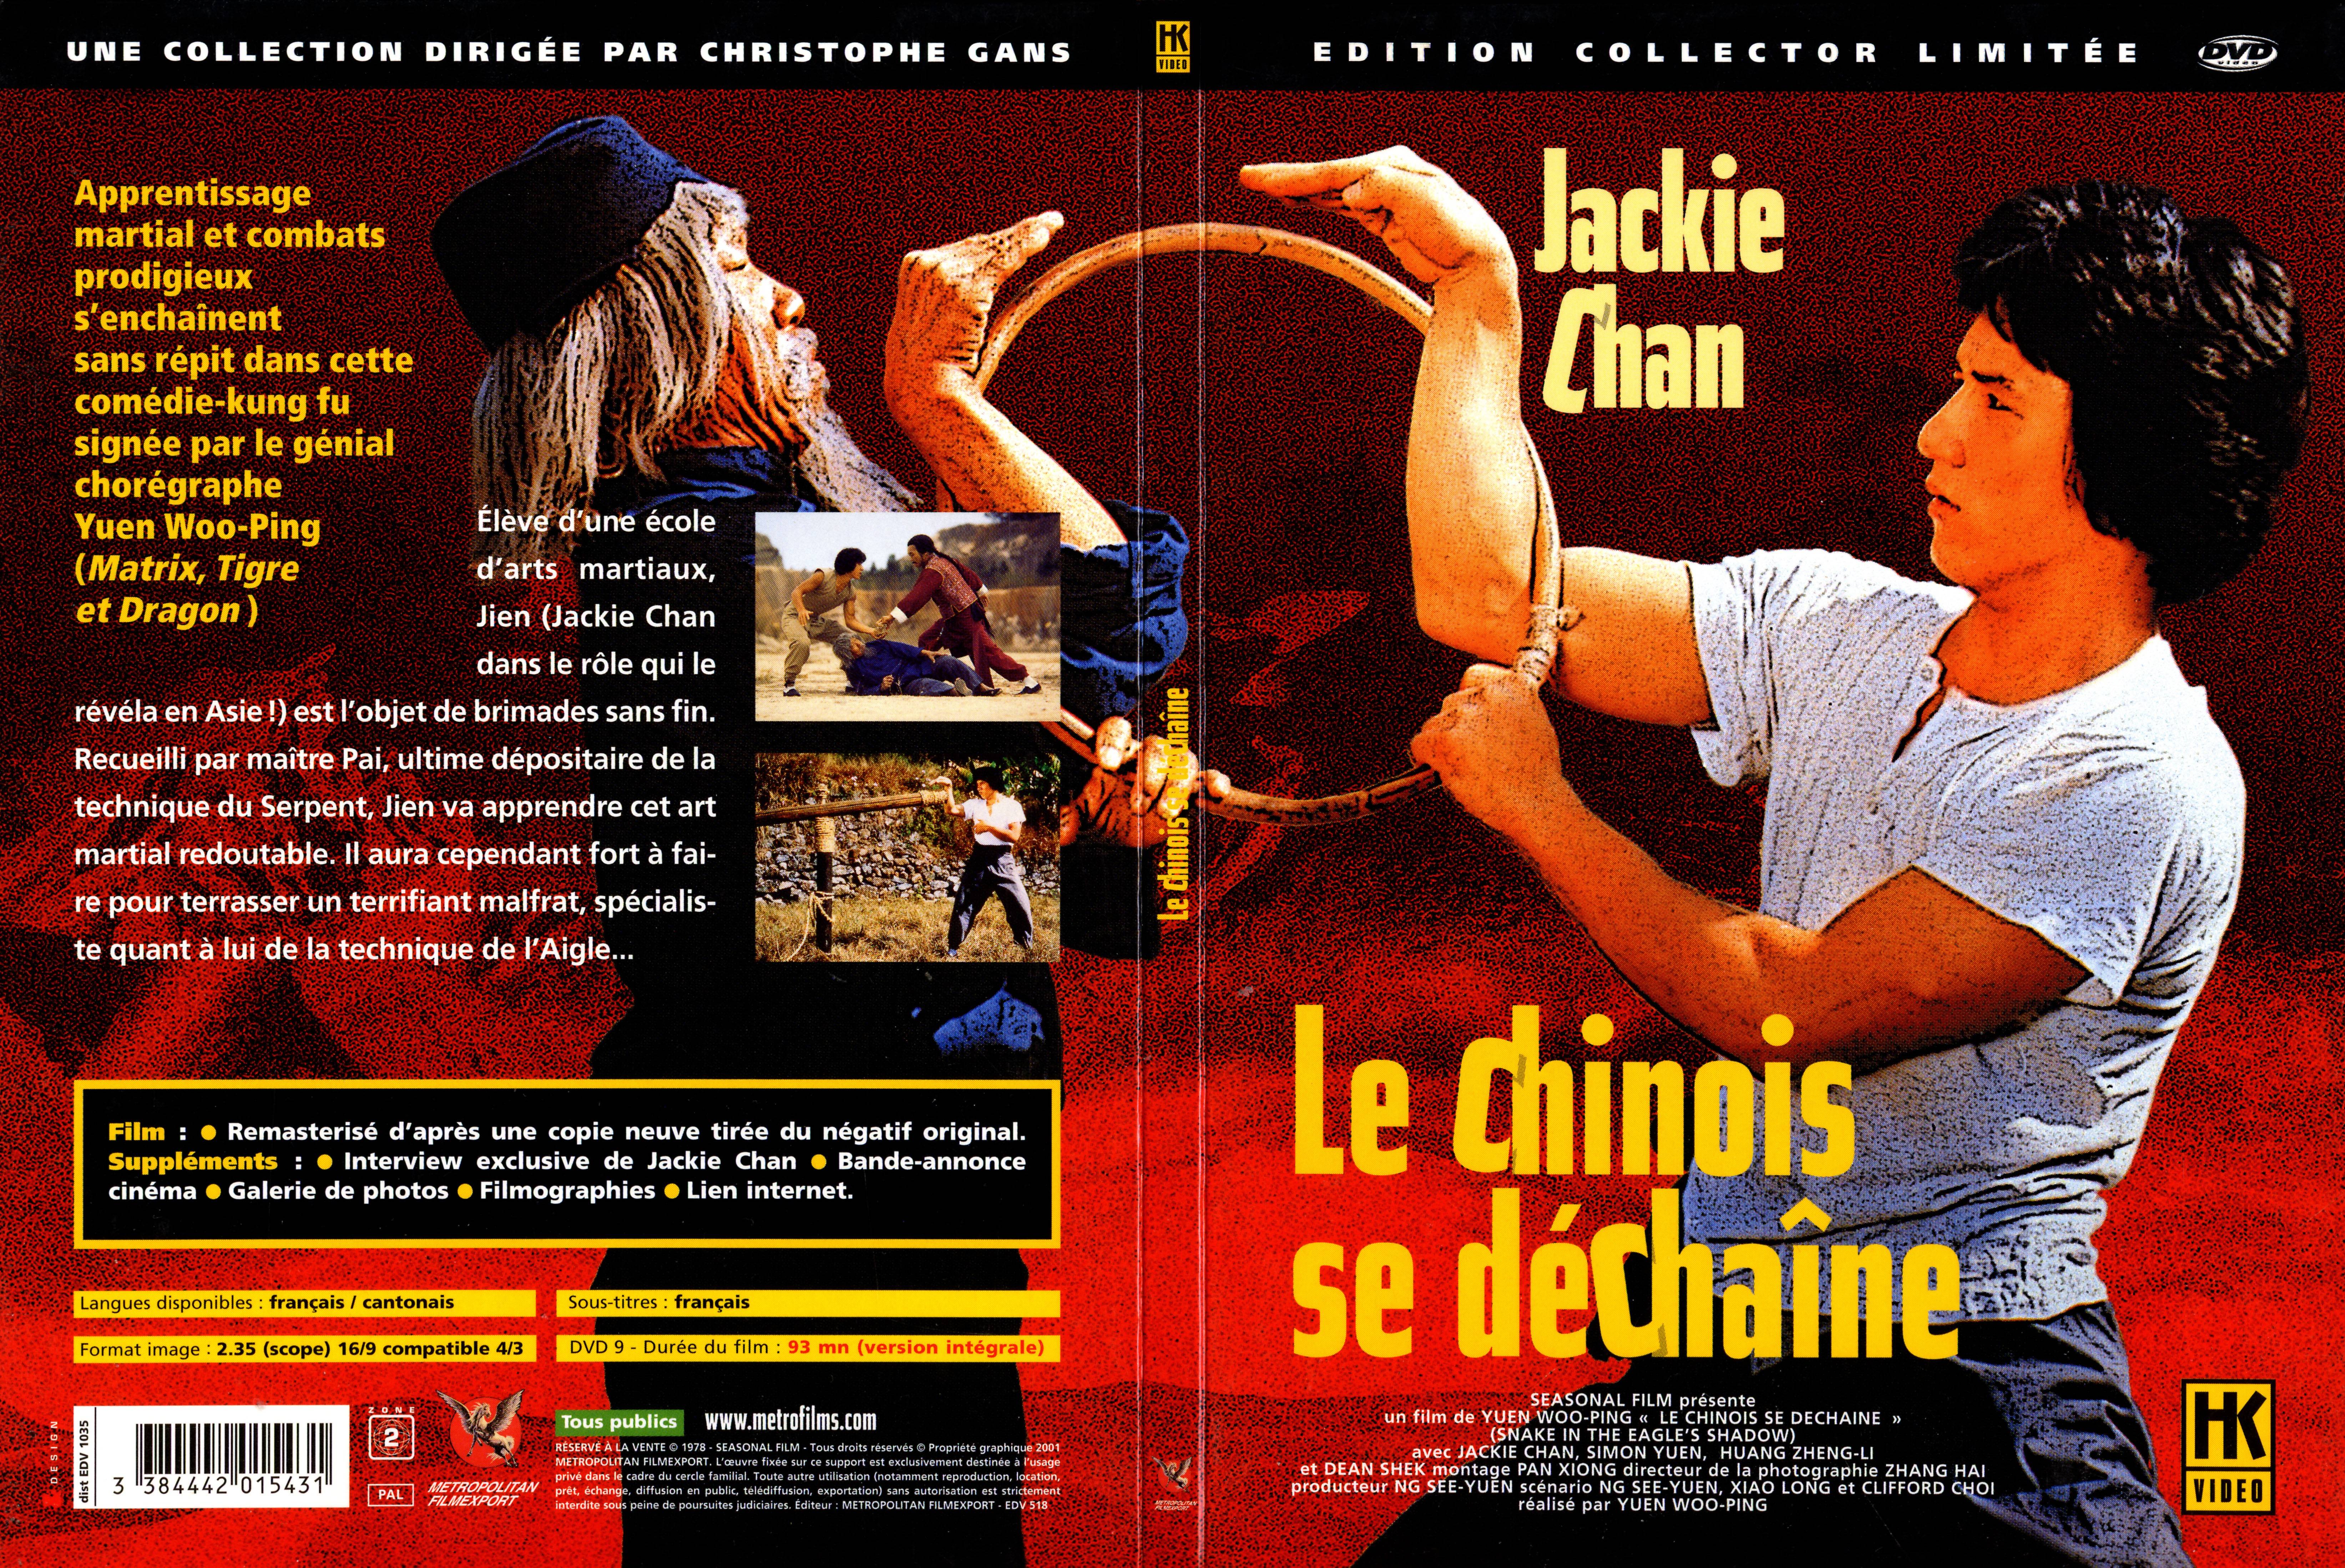 Jaquette DVD Le chinois se dechaine